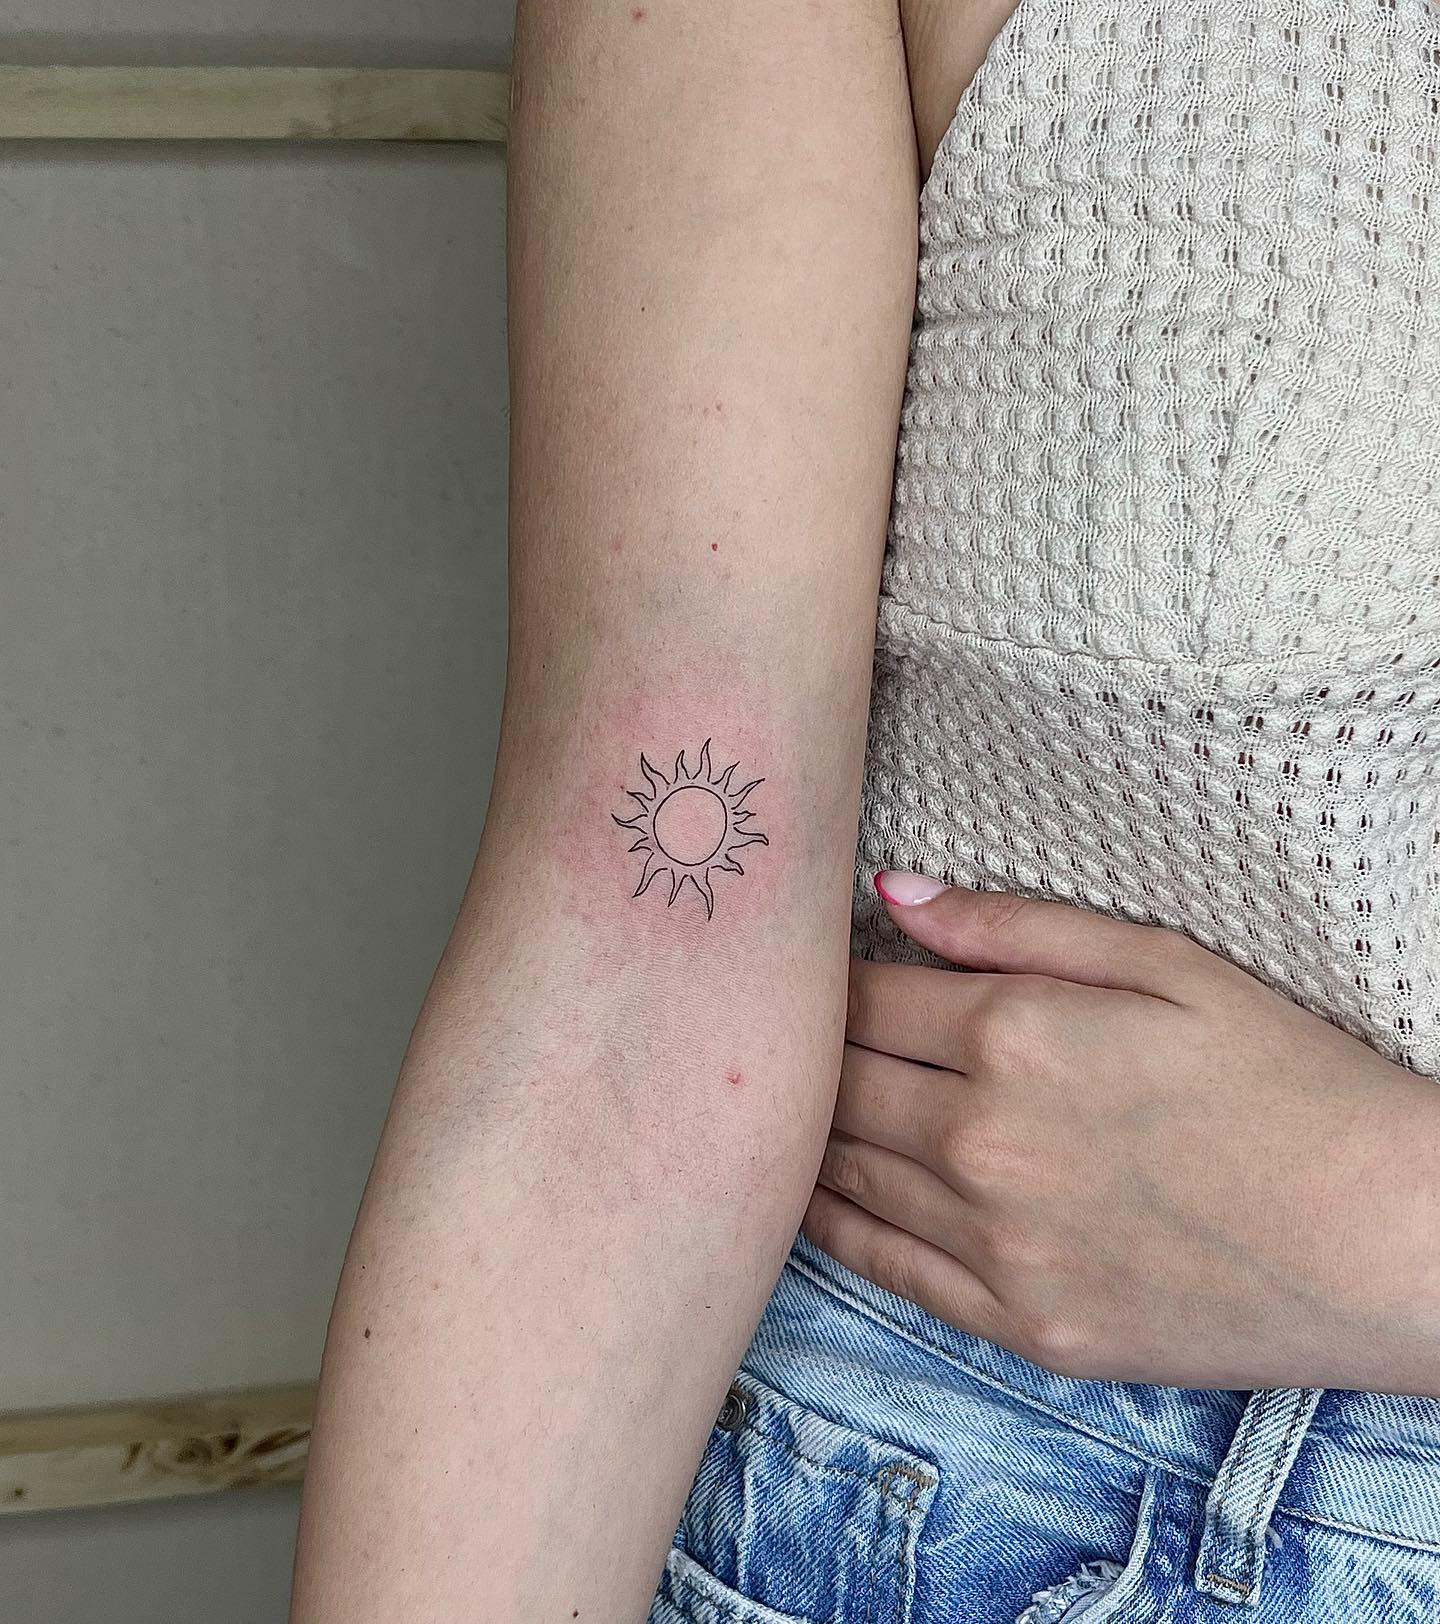 Diseño de tatuaje solar en antebrazo.